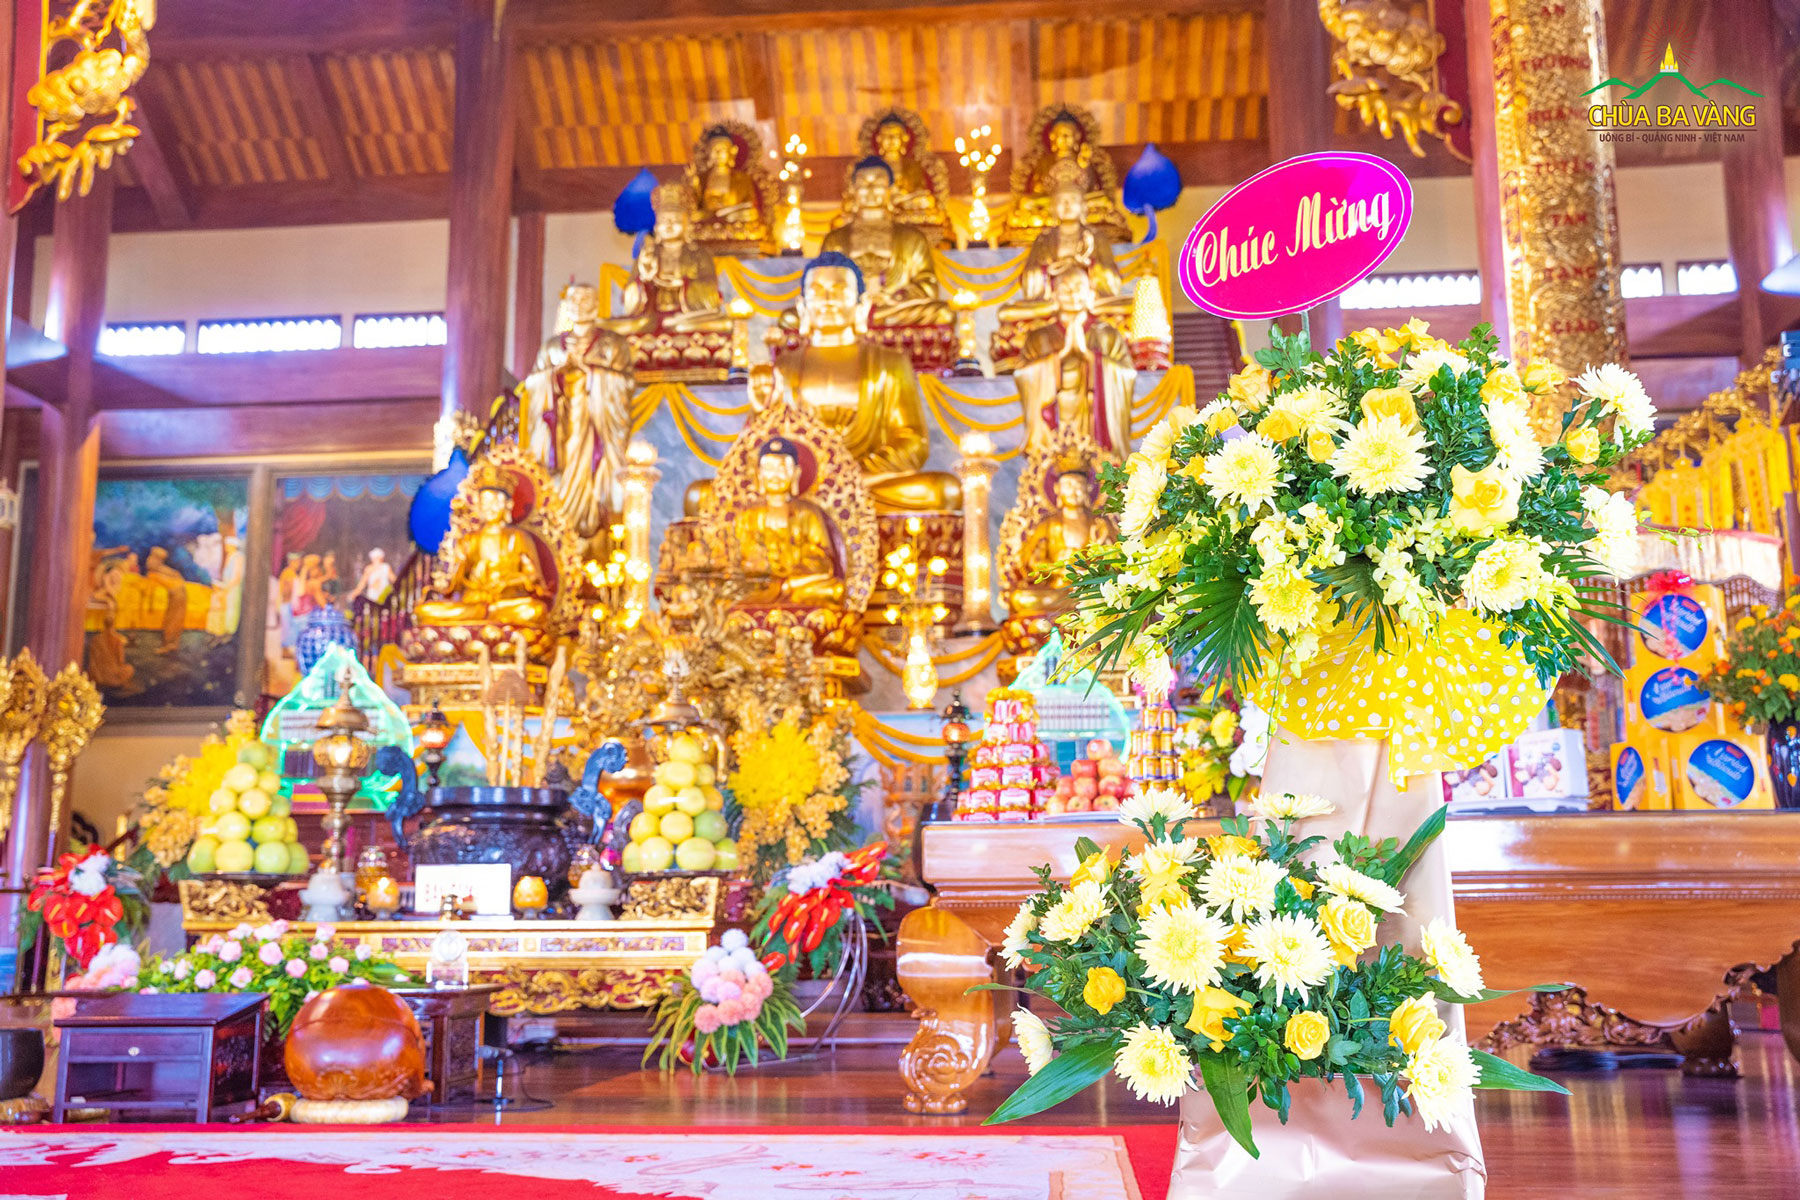 Lẵng hoa chúc mừng của Phó chánh Văn phòng UBND tỉnh Quảng Ninh được đặt tại Chính Điện chùa Ba Vàng